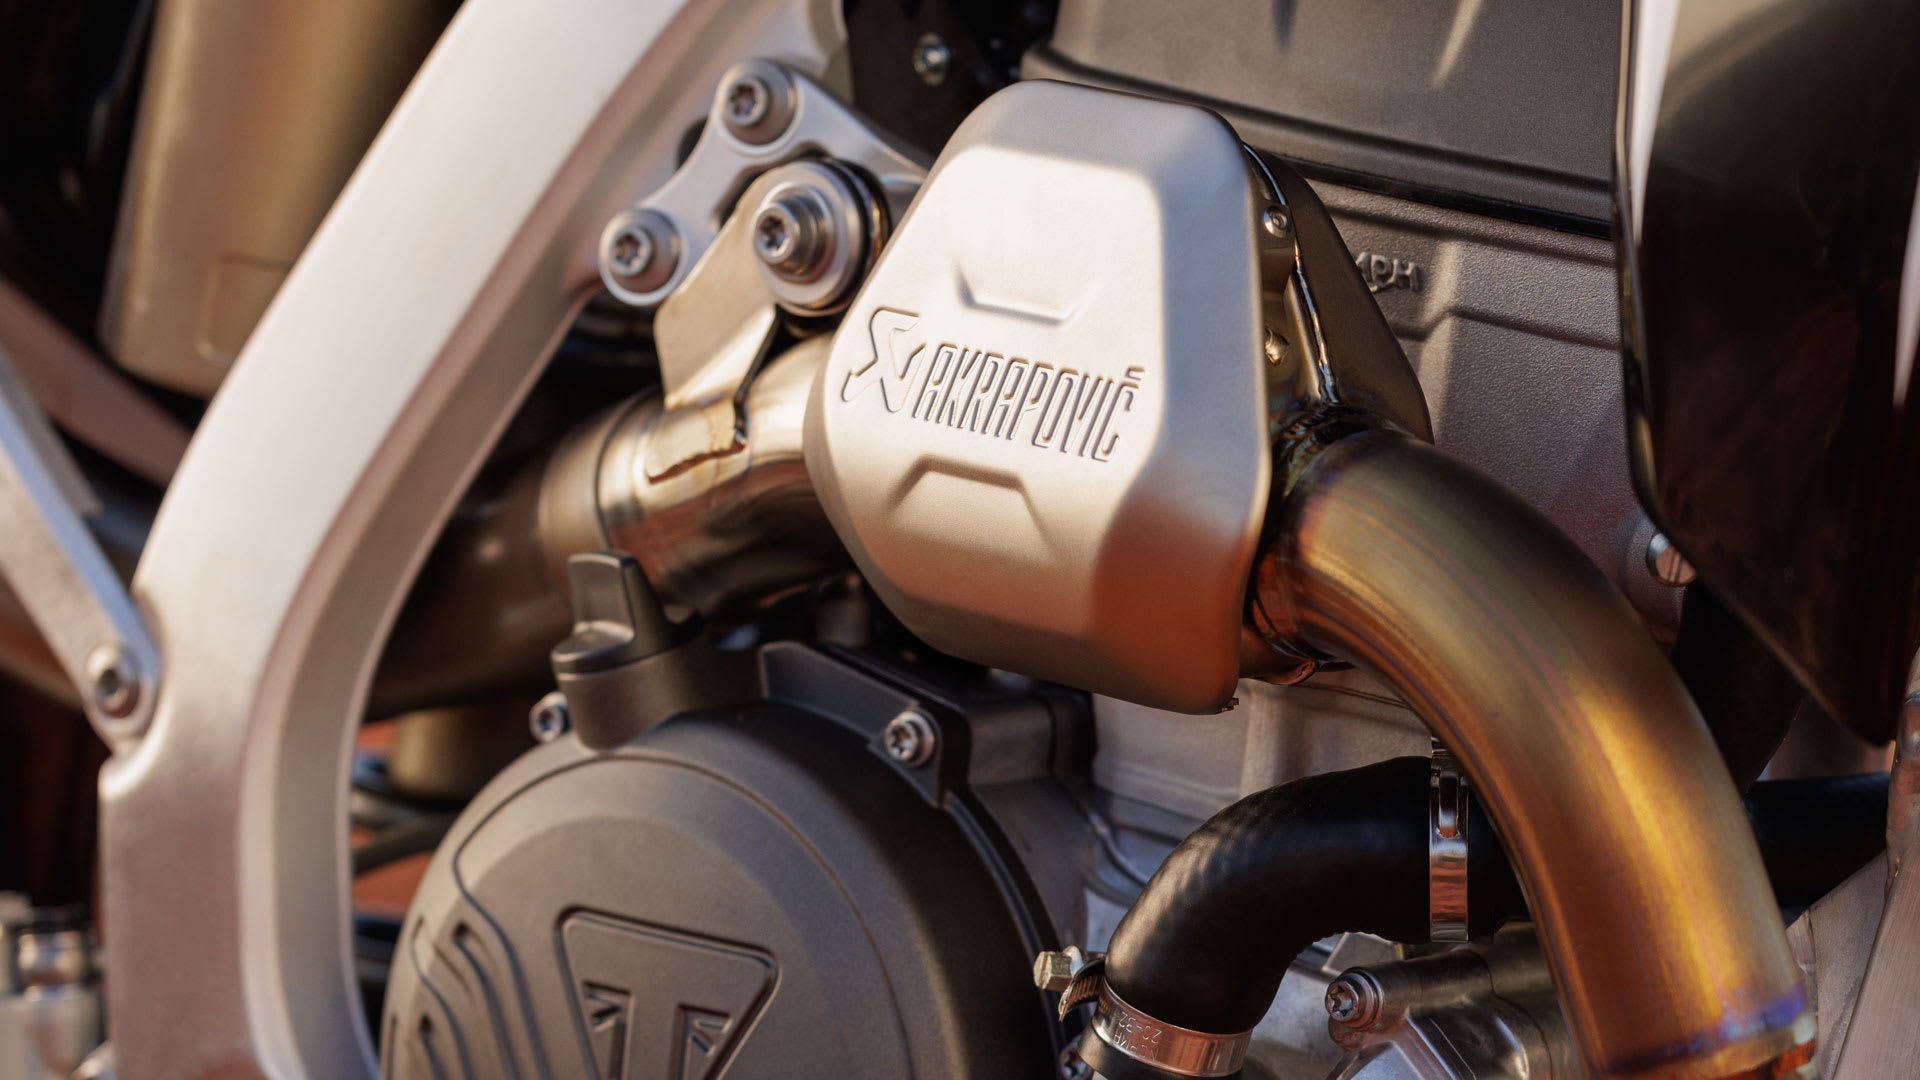 Triumph MX TF 250-X Accessory Akrapovič exhaust system